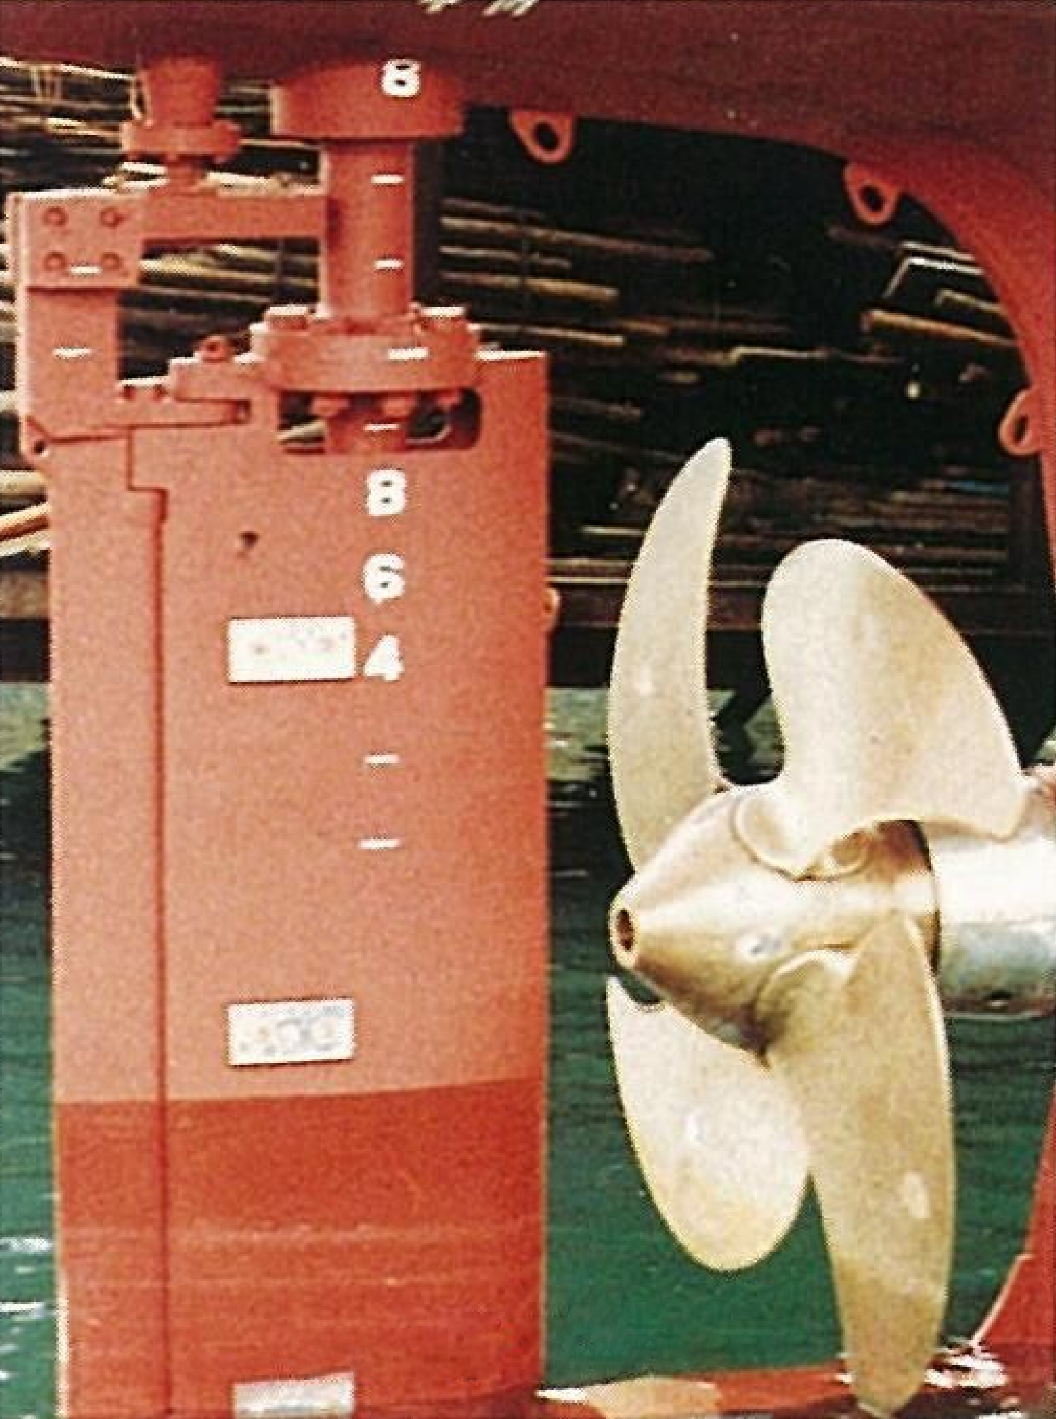 1981年 船の操船性能を高める「K-7 ラダー」を開発。